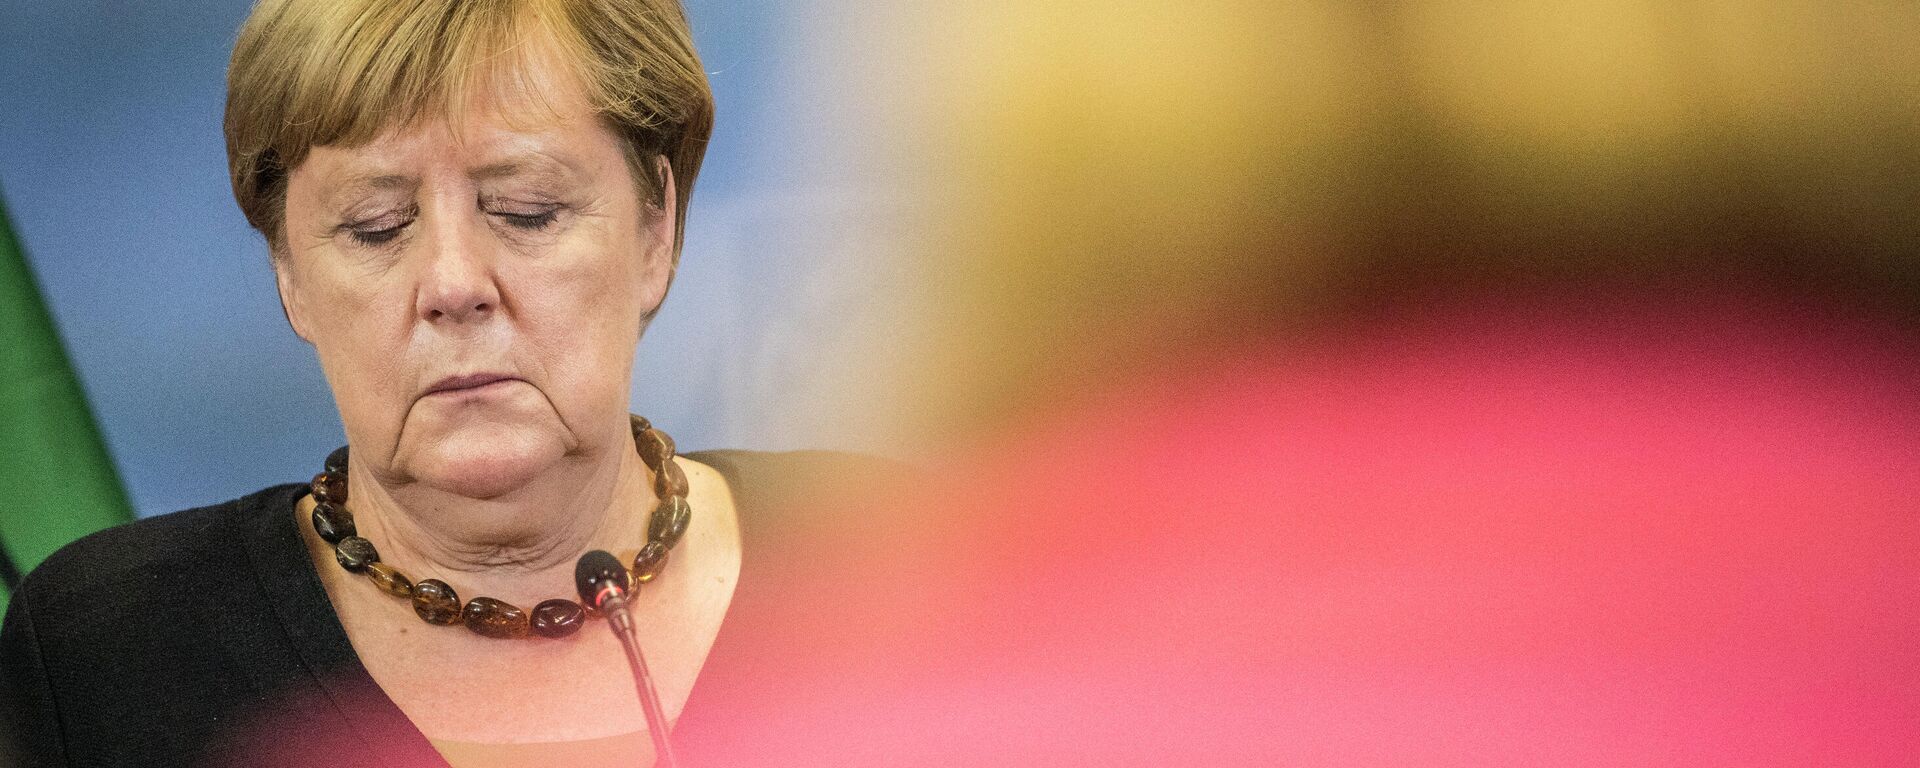 Ангела Меркель с закрытыми глазами на пресс-конференции - Sputnik Грузия, 1920, 06.09.2021